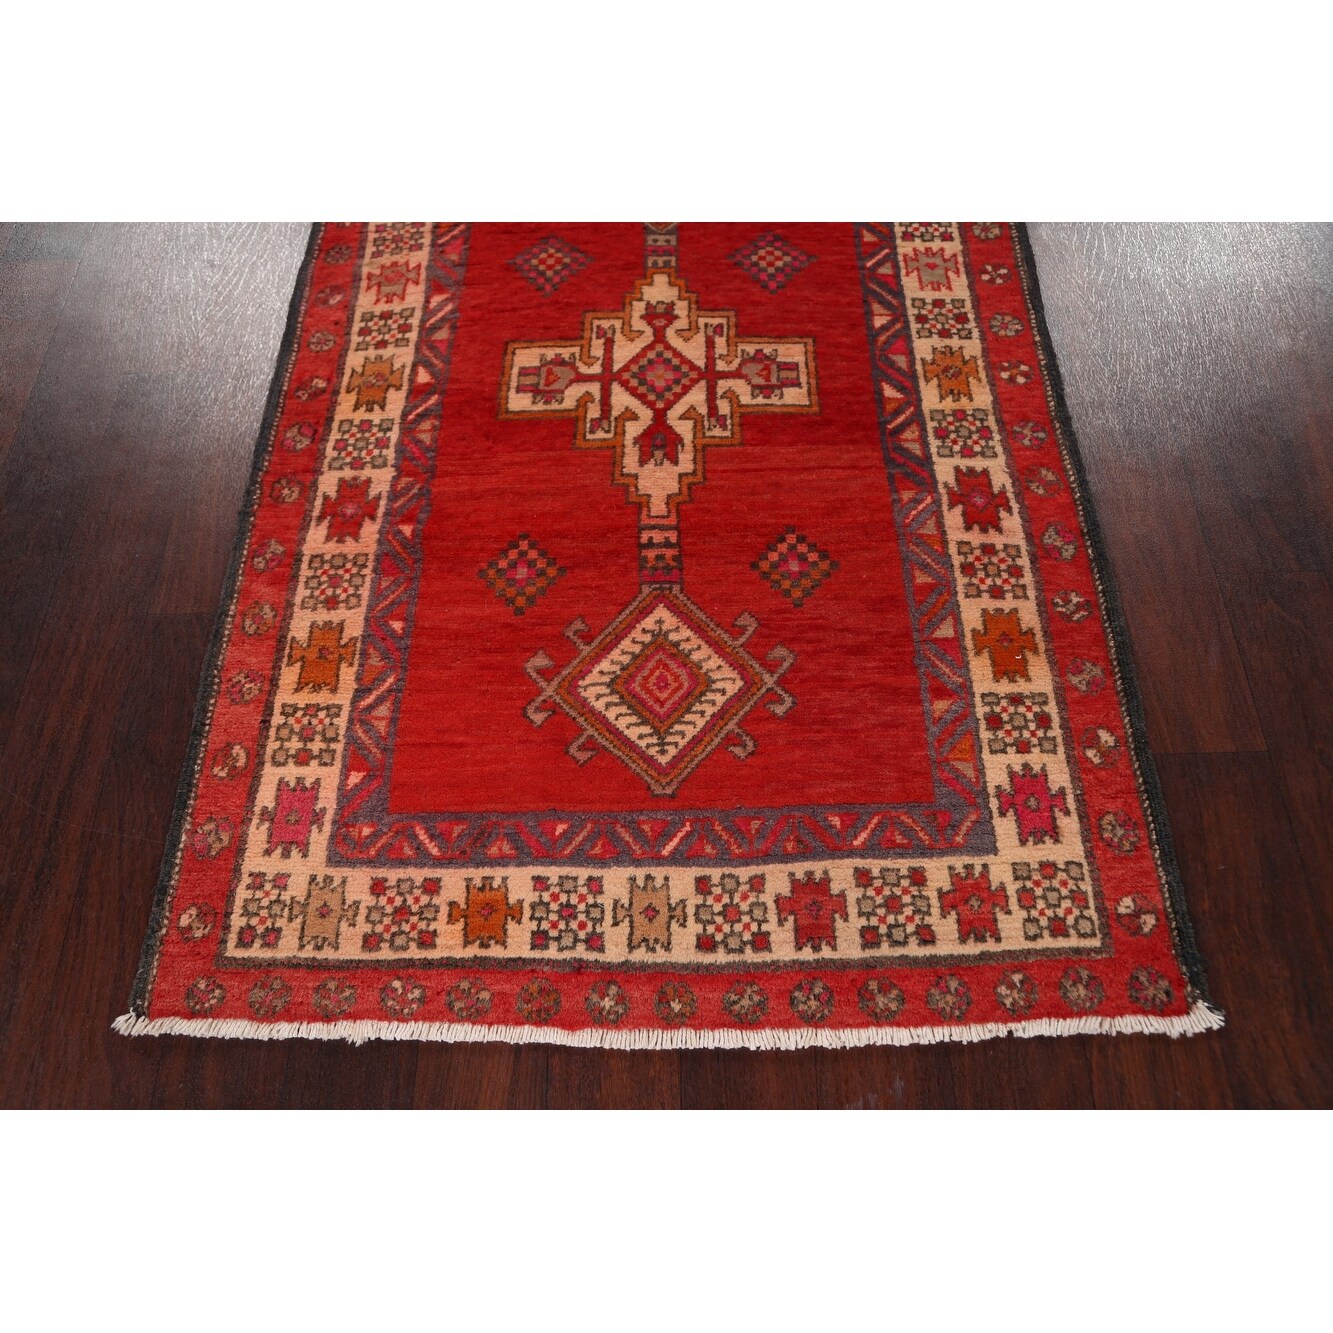 Vintage Red Runner Rug Handmade Oriental Tribal Wool Area Rug CARPET 110x385cm 